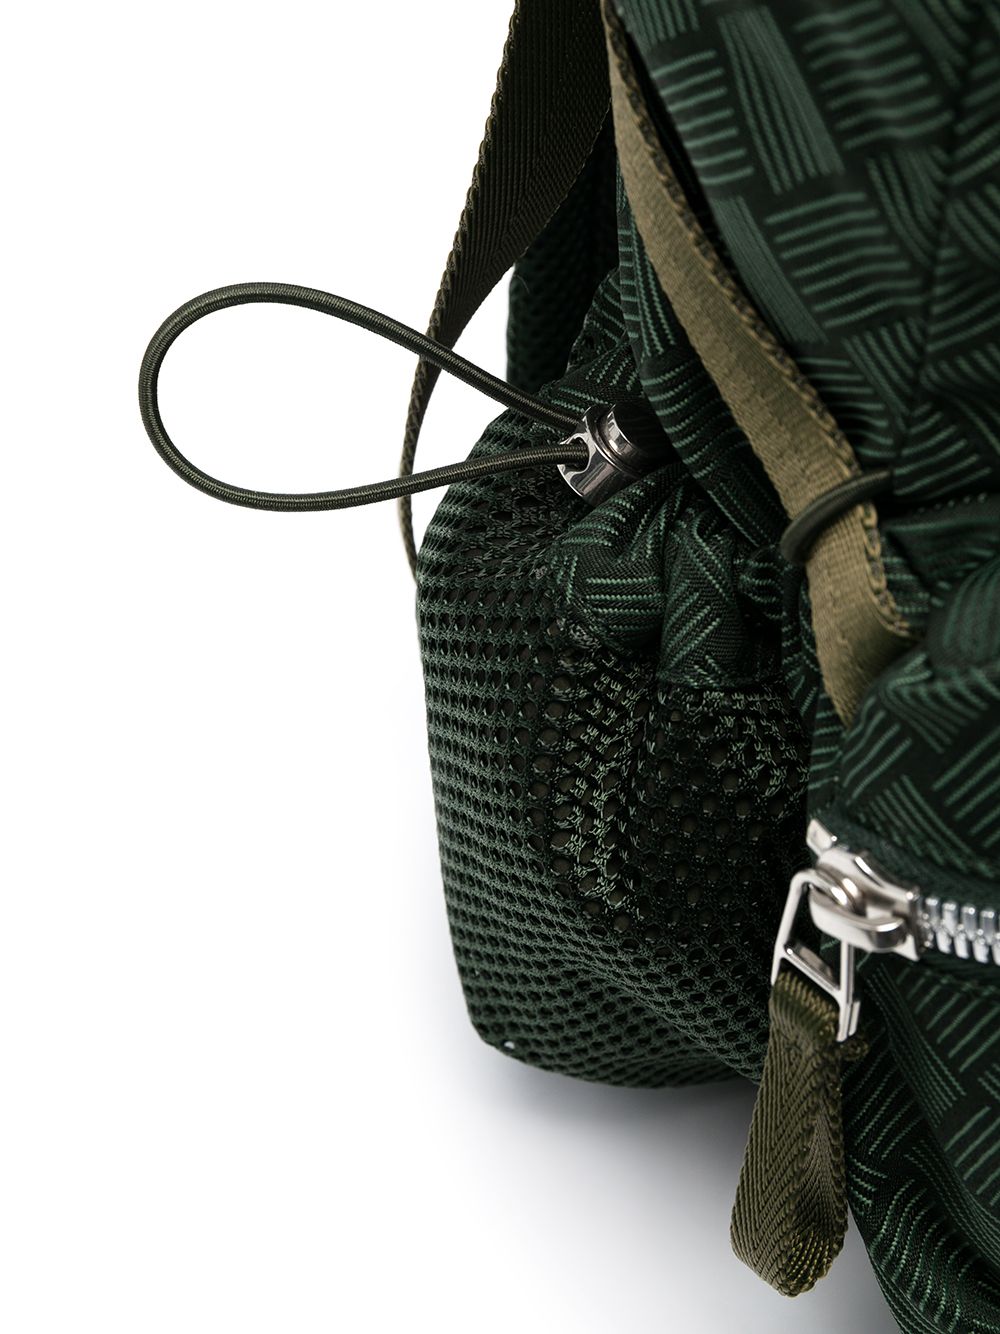 фото Bottega veneta рюкзак с жаккардовым узором